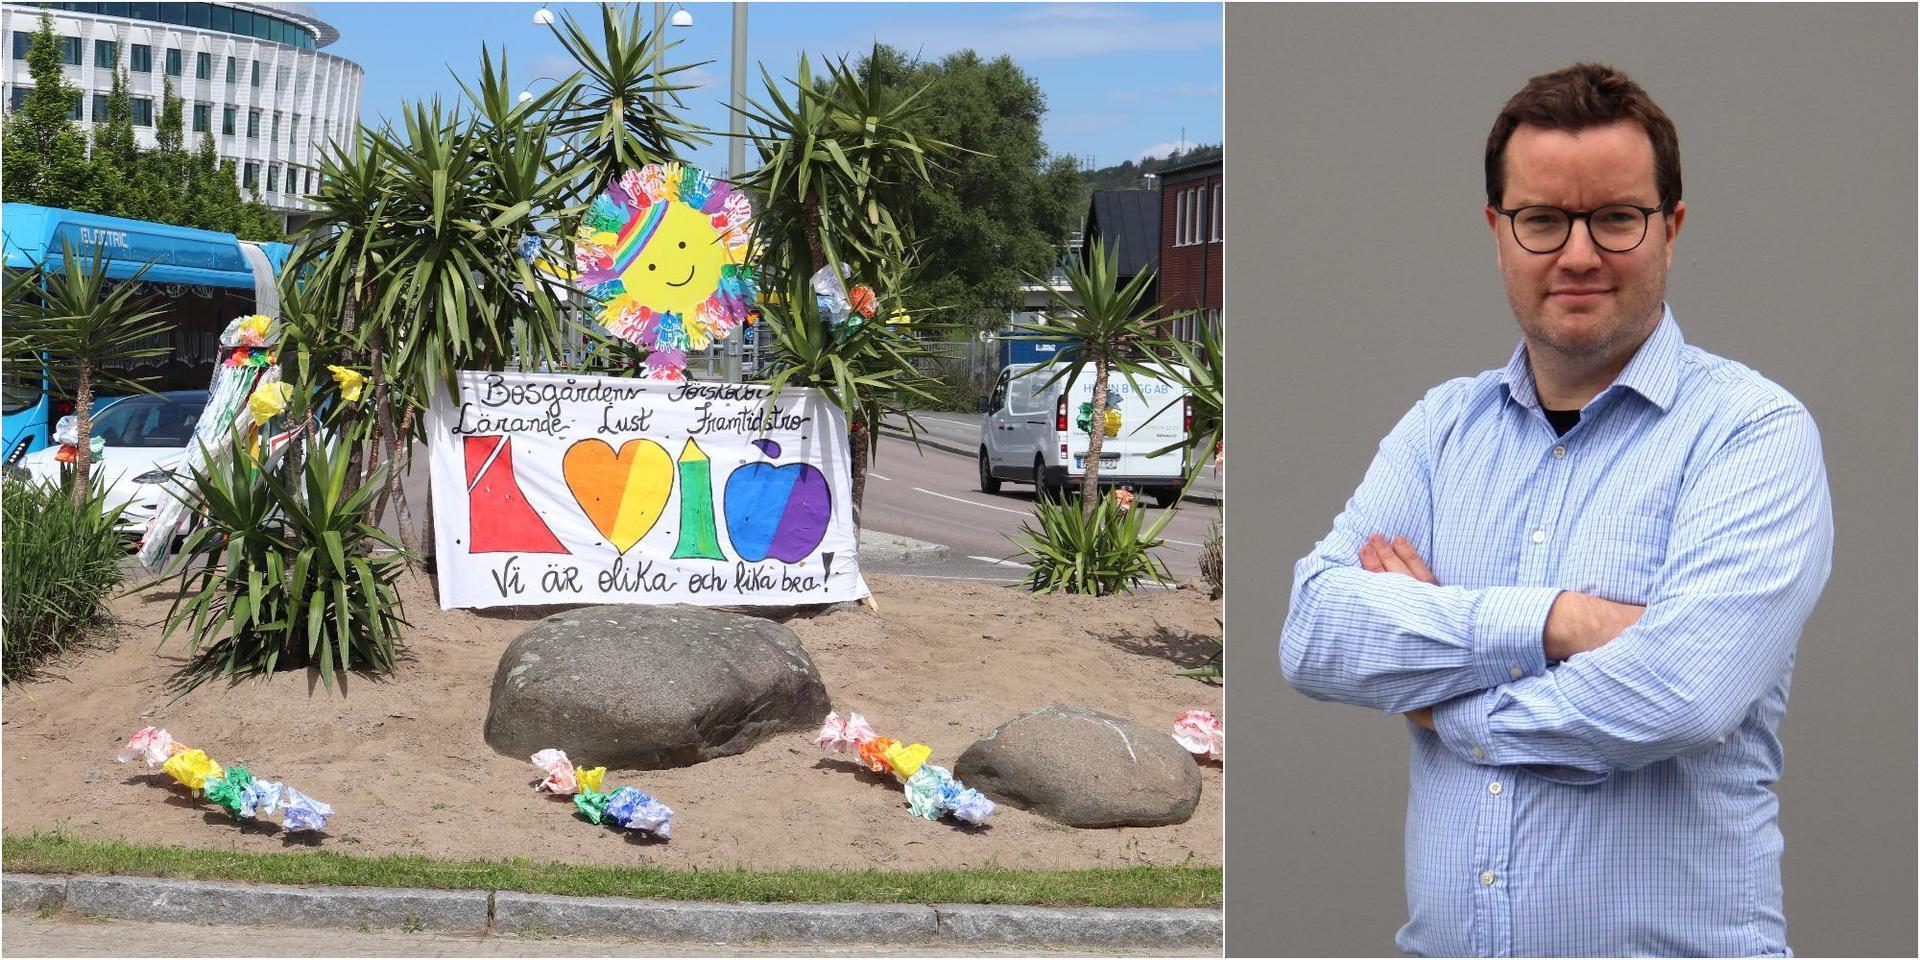 Pridesmyckningen av rondellen vid Baazgatan fick SD-ledaren att gå i taket, konstaterar Fredrik Hofflander.